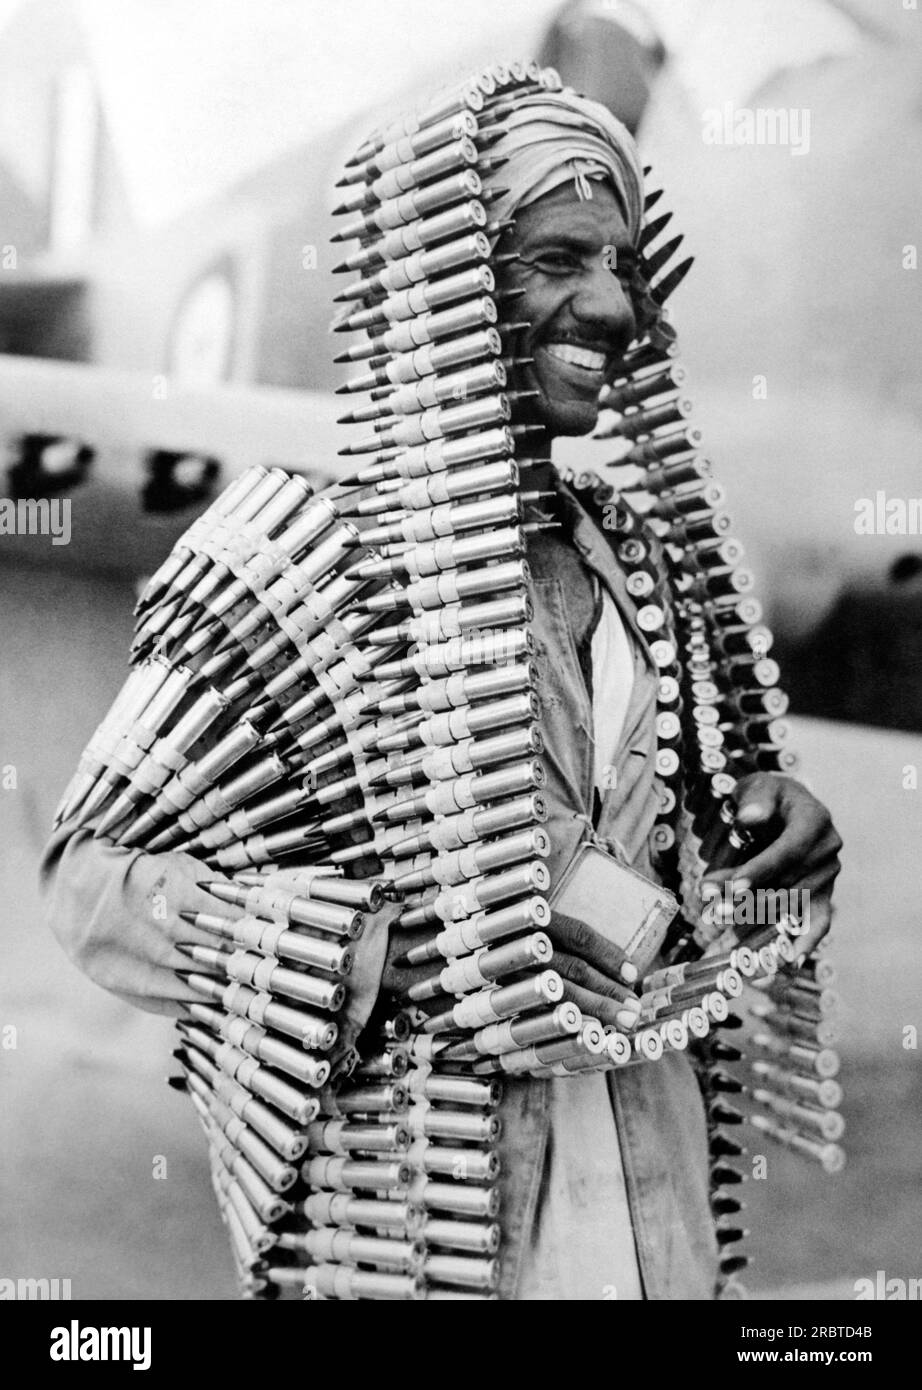 Libia: c. 1941 un assistente arabo di un corazzatore R.A.F. soddisfatto di questo originale capo di munizioni per un aereo da combattimento 'Kittyhawk' contro i convogli tedeschi in Africa. Foto Stock